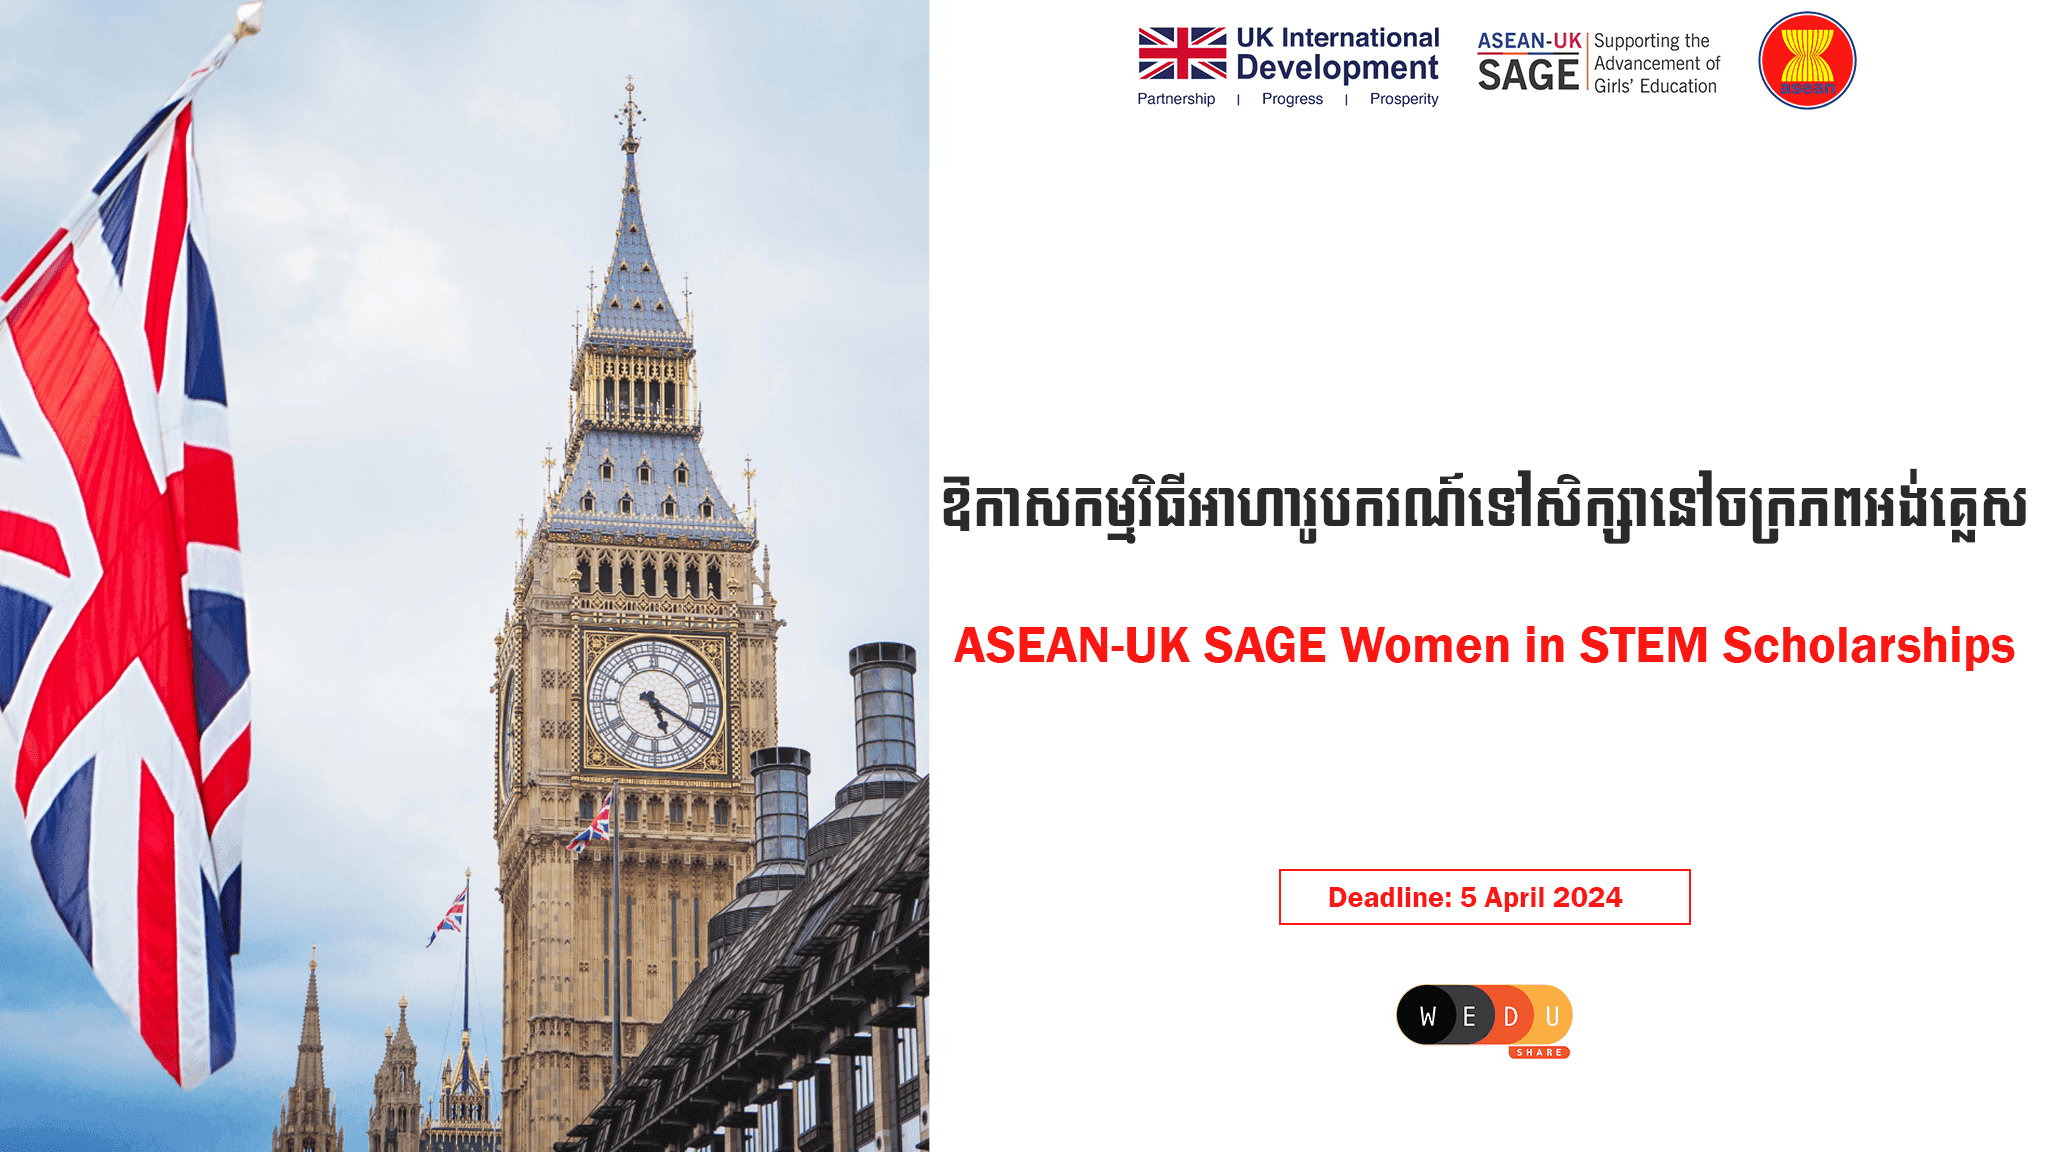 ASEAN-UK SAGE Women in STEM Scholarships